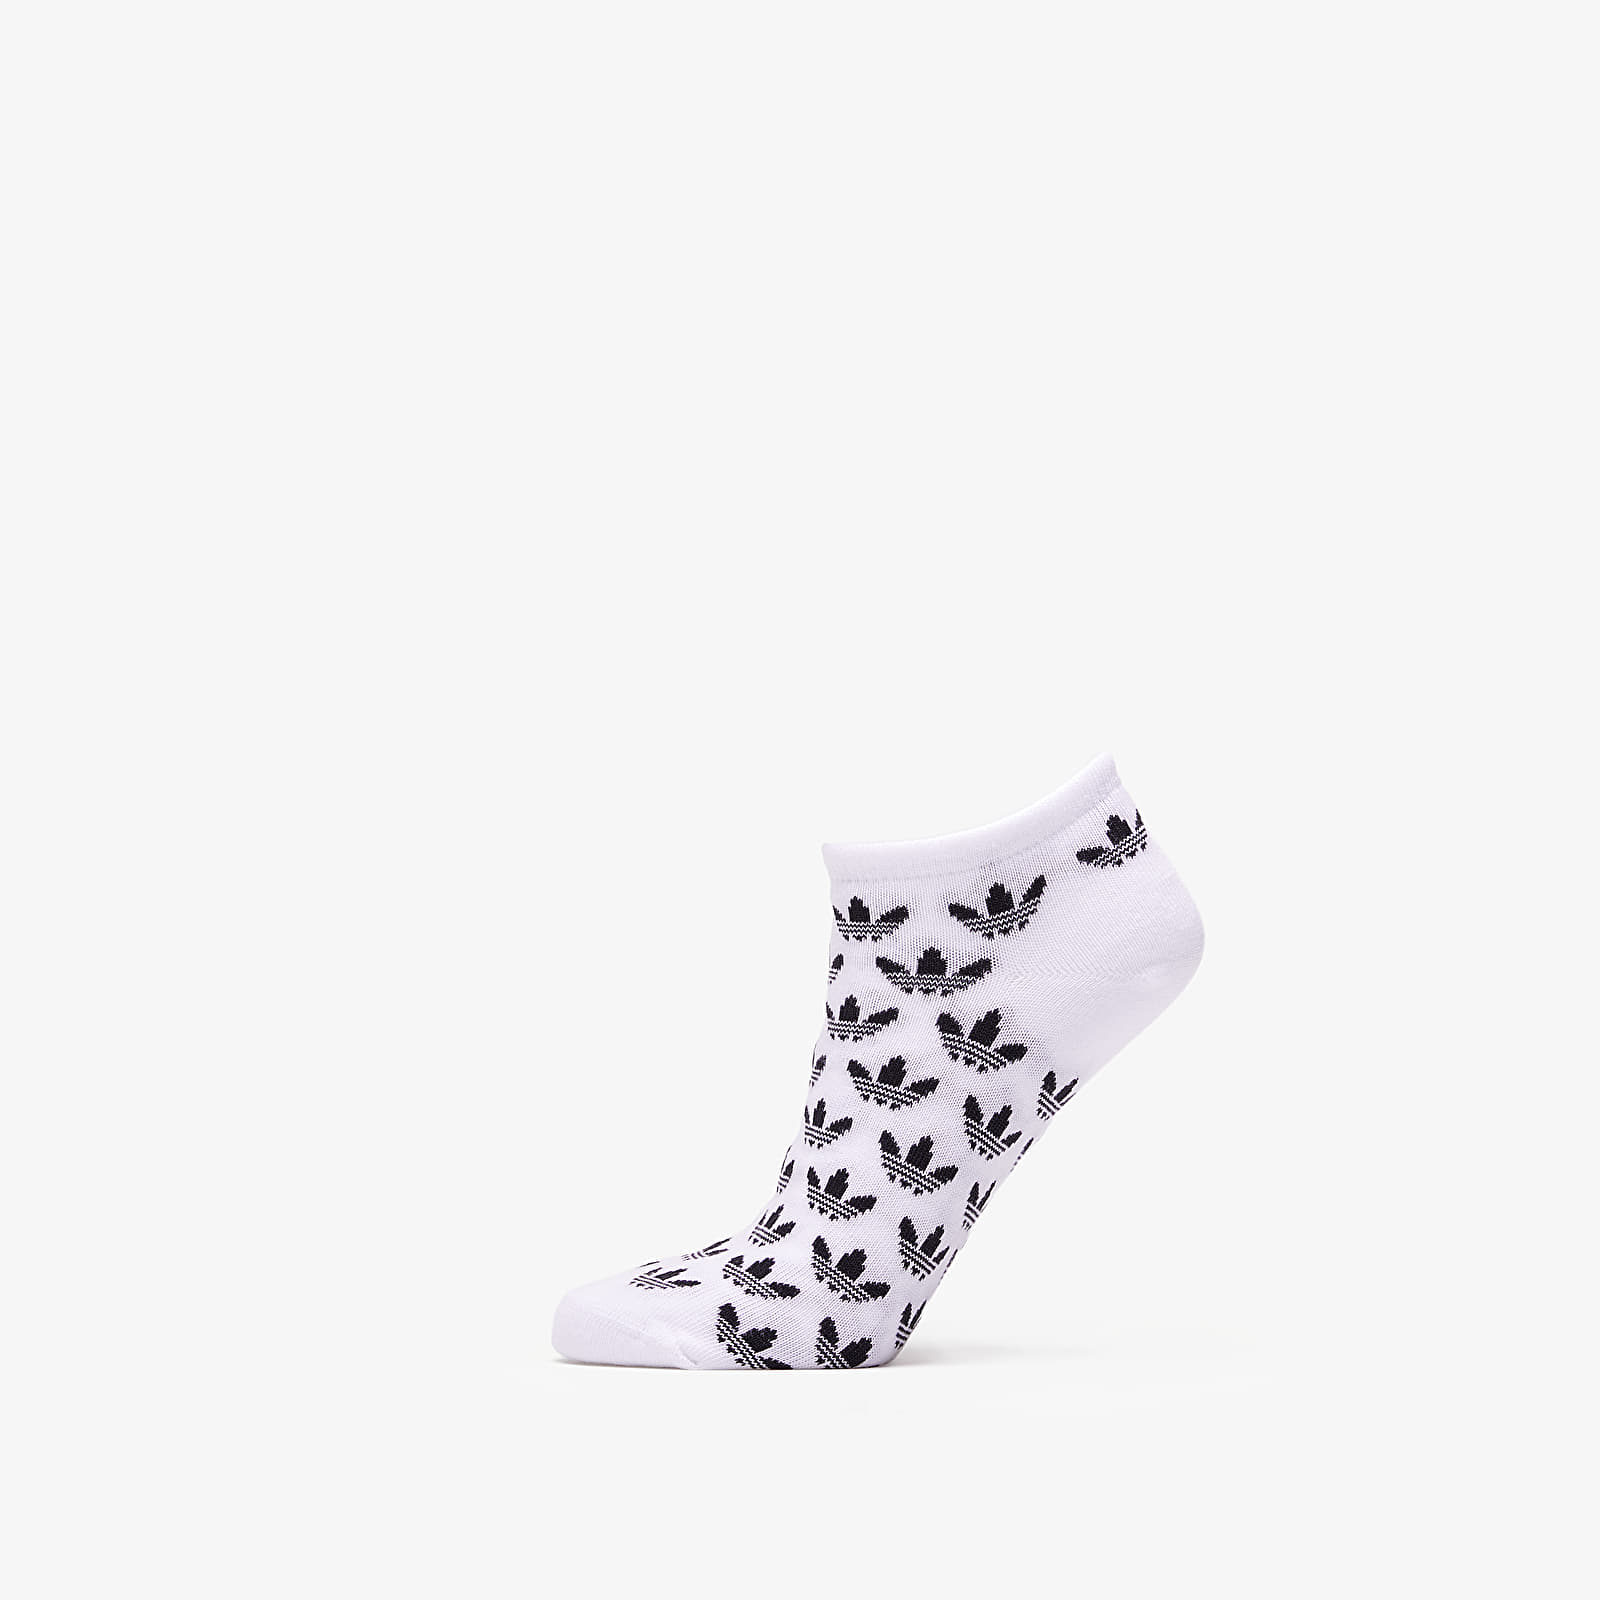 Socks adidas Trefoil 2 Pack Liner Socks Sky Tint/ White